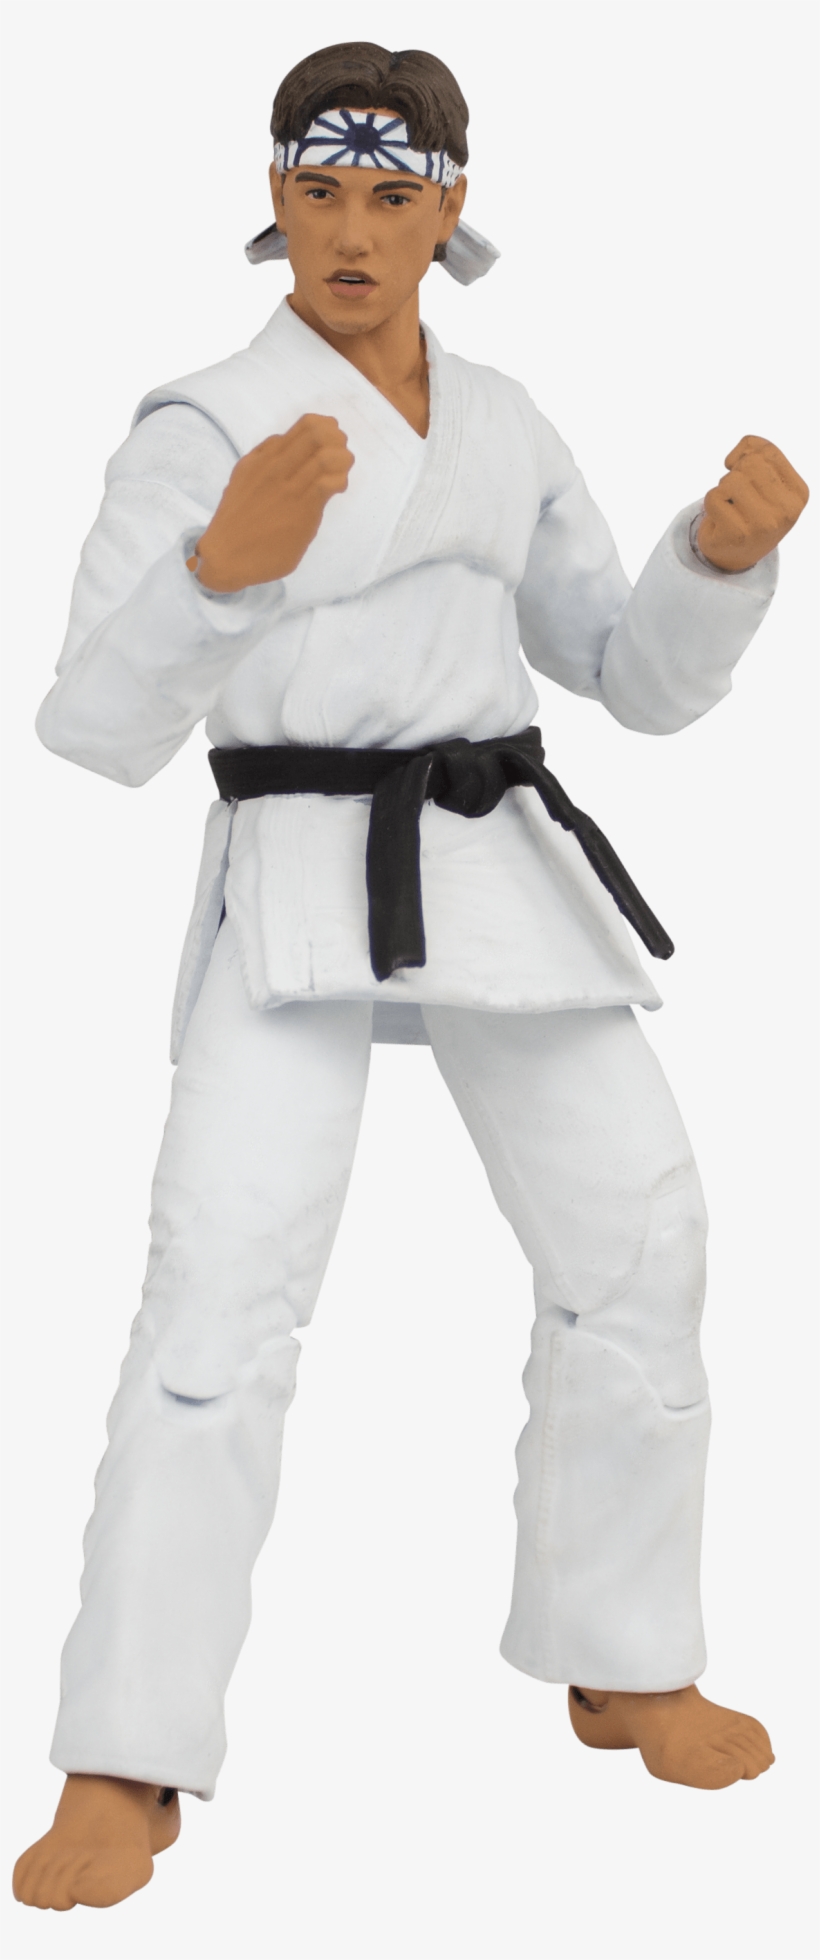 The Karate Kid Daniel Larusso Action Figure - Brazilian Jiu-jitsu, transparent png #9159695